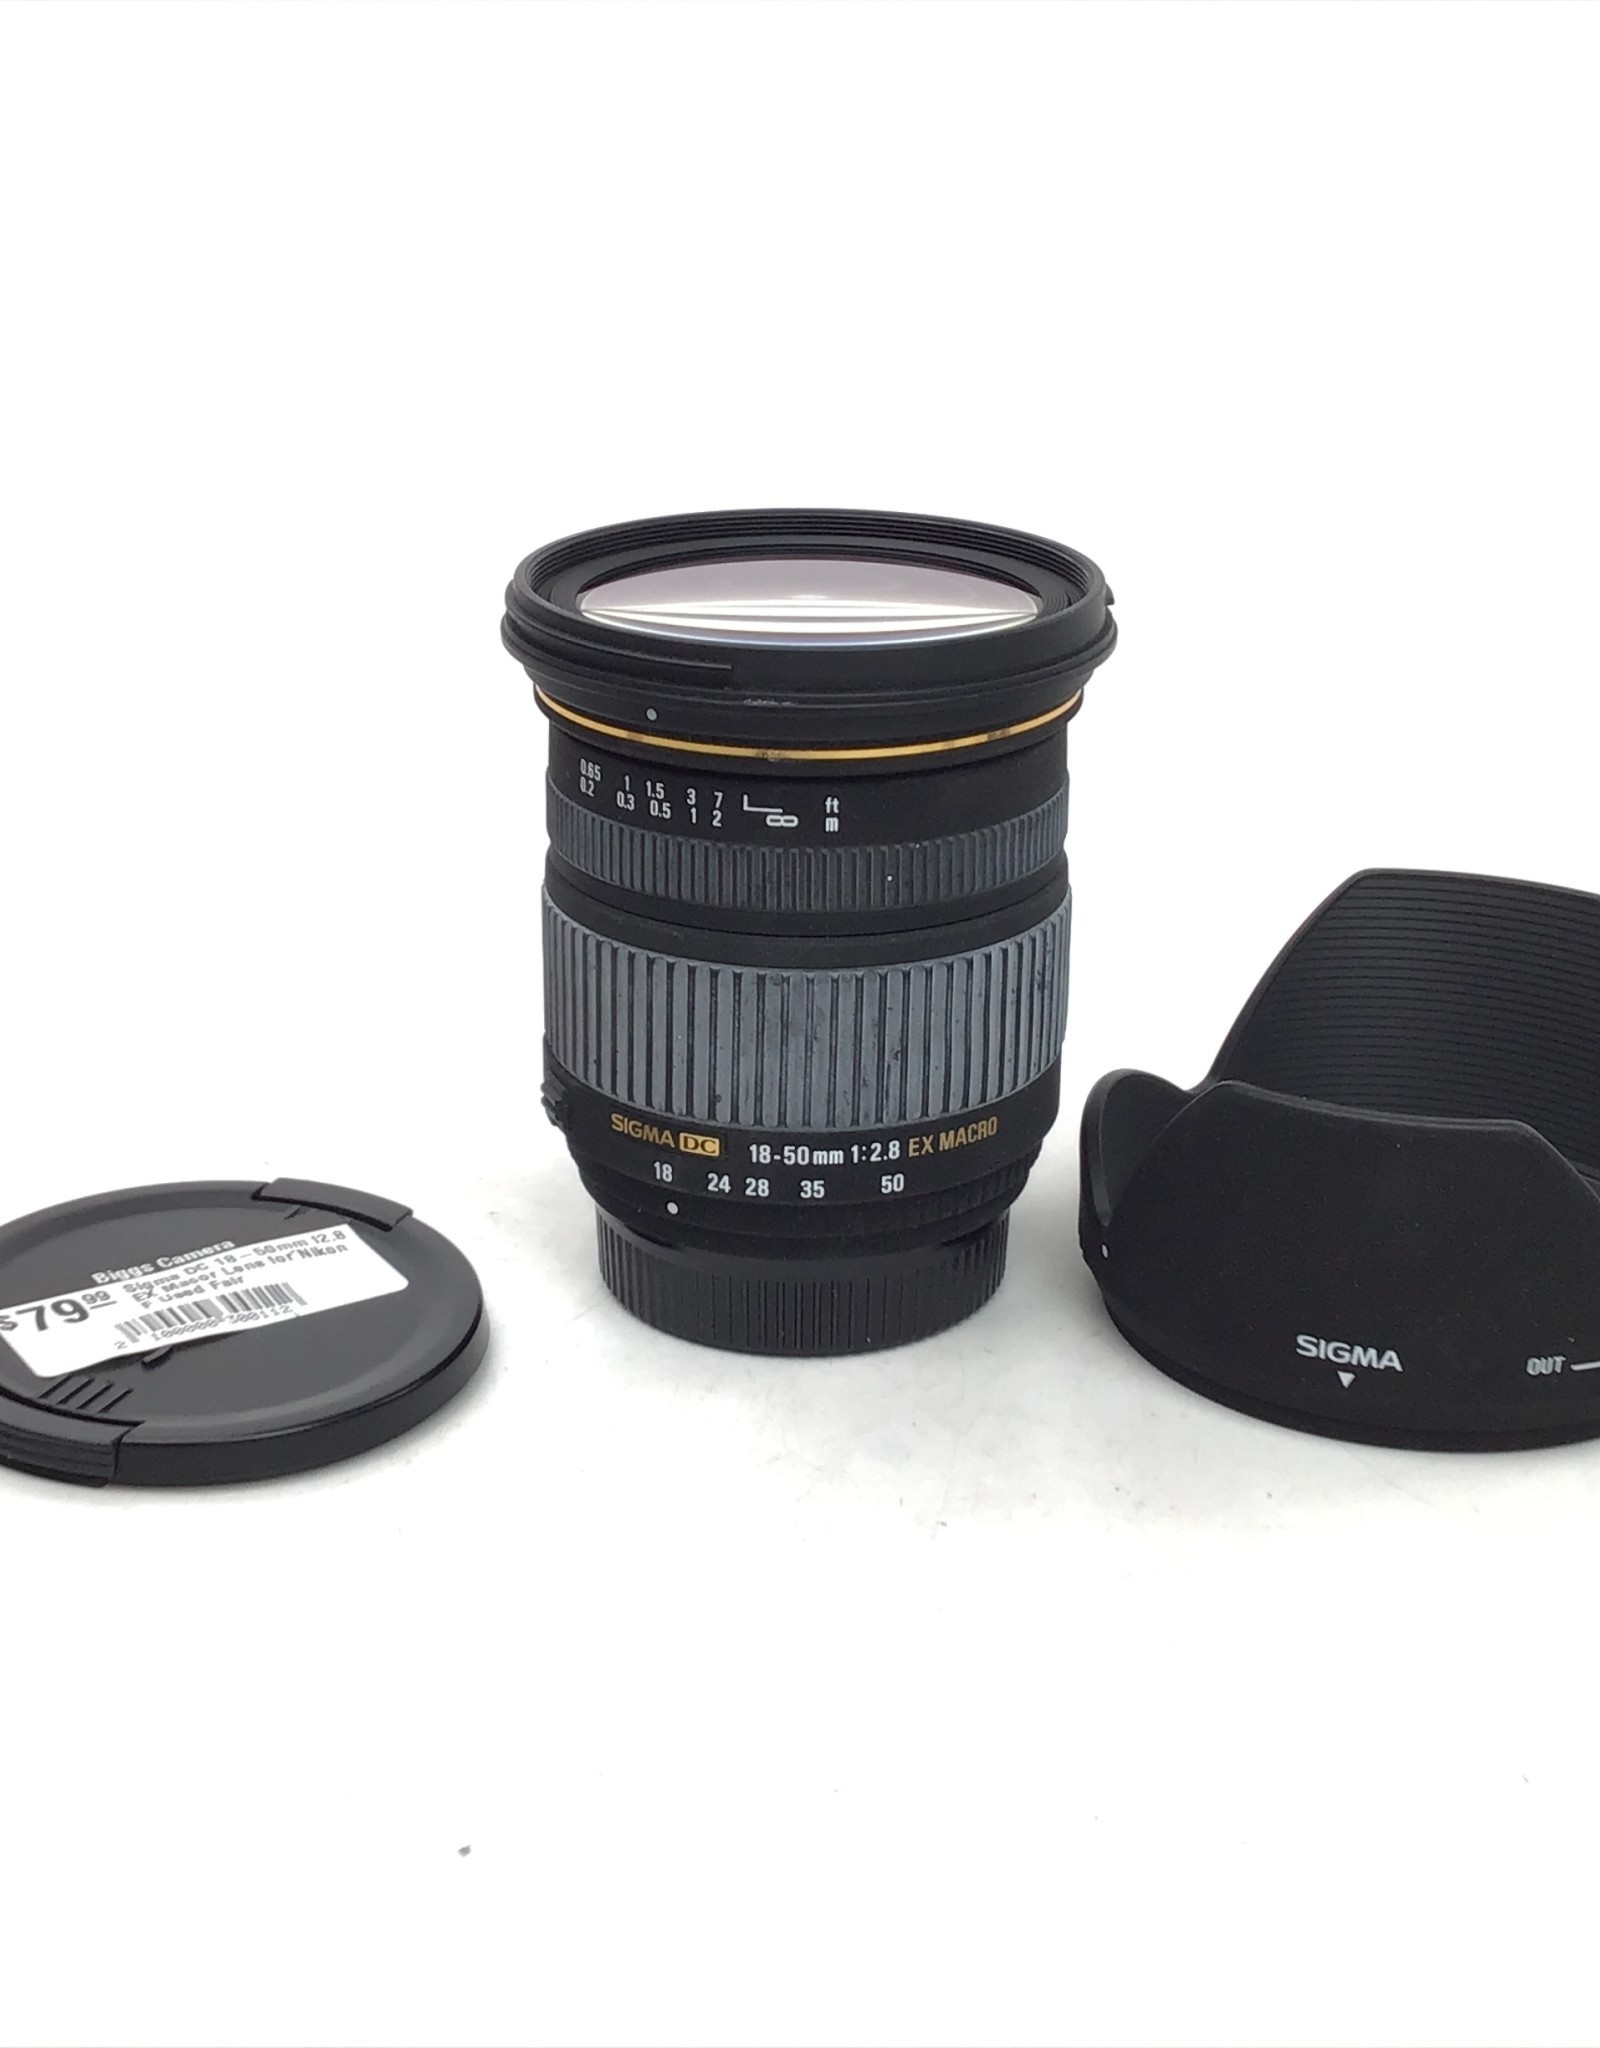 SIGMA Sigma DC 18-50mm f2.8 EX Macor Lens for Nikon F Used Fair